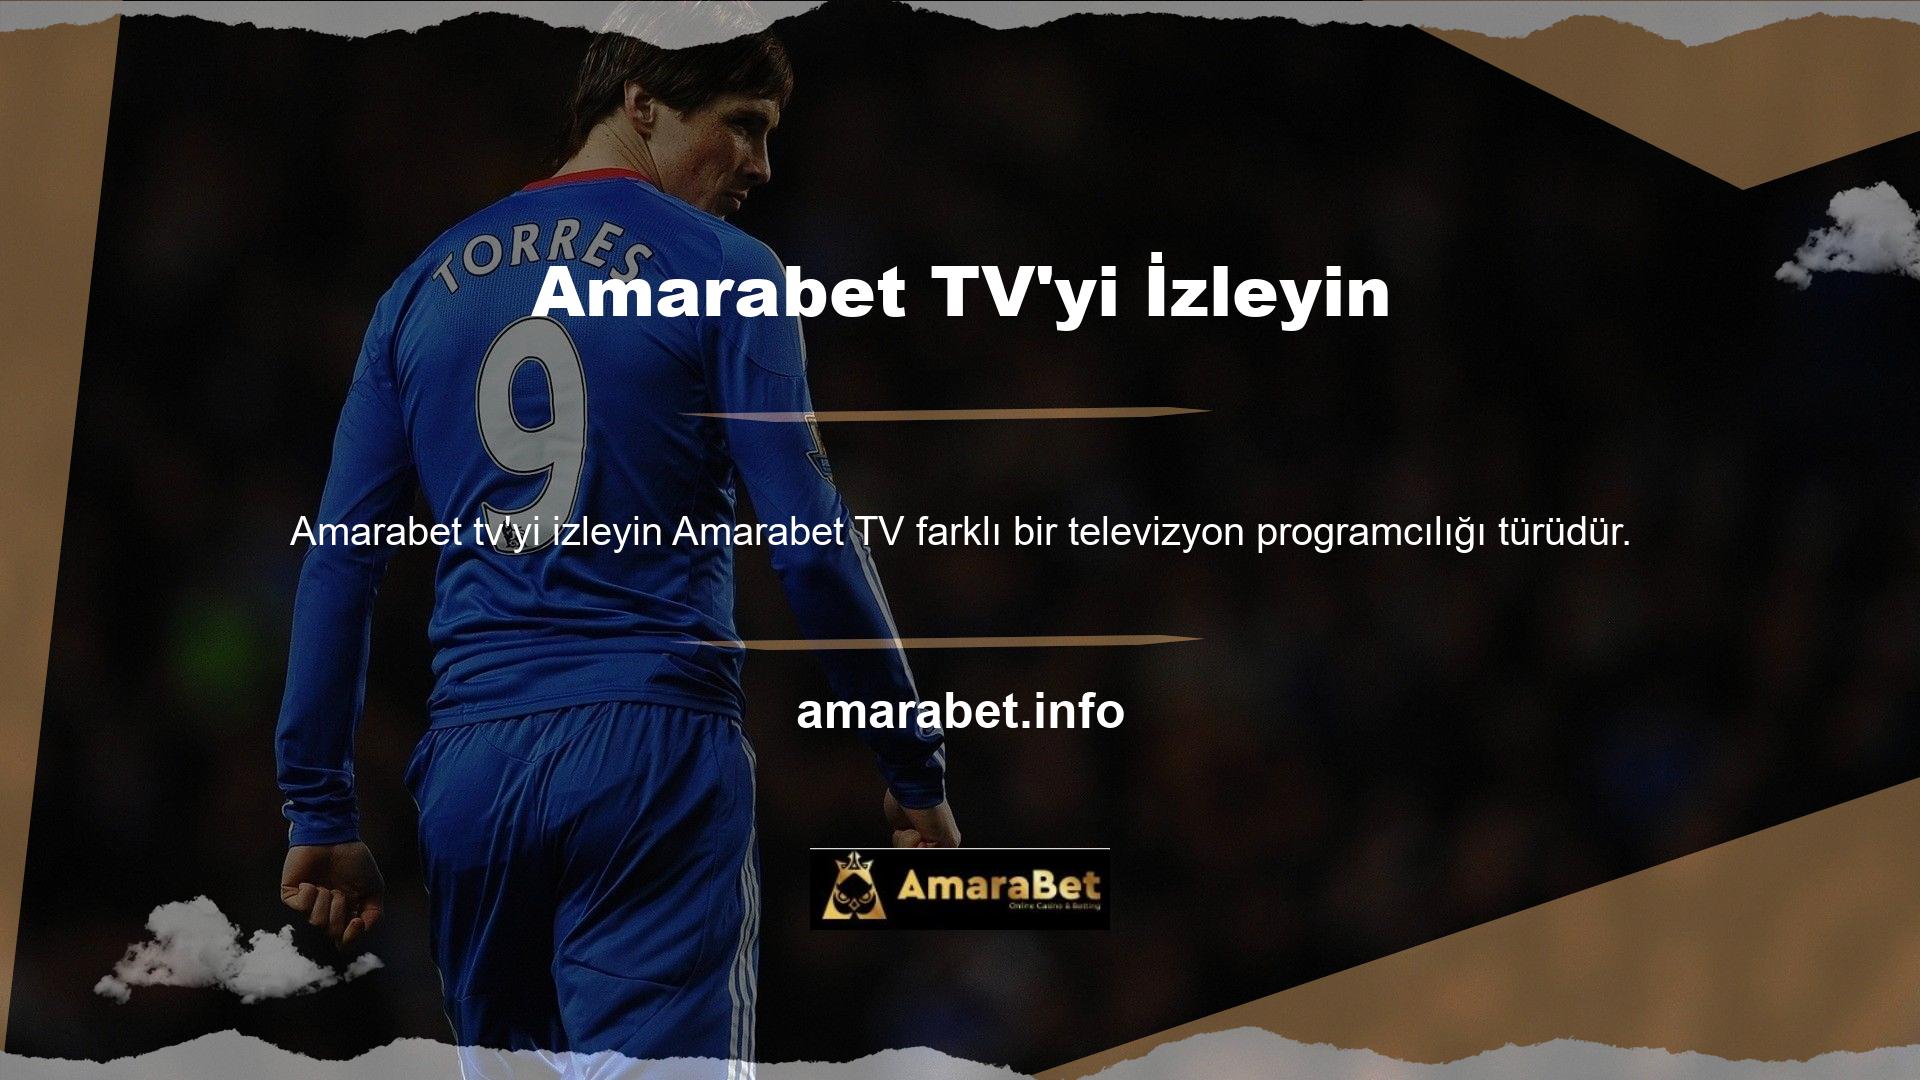 Amarabet TV, HD ve Ultra HD gibi yüksek çözünürlüklü yayın kalitesi seçenekleri isteyen bireylere hitap ediyor